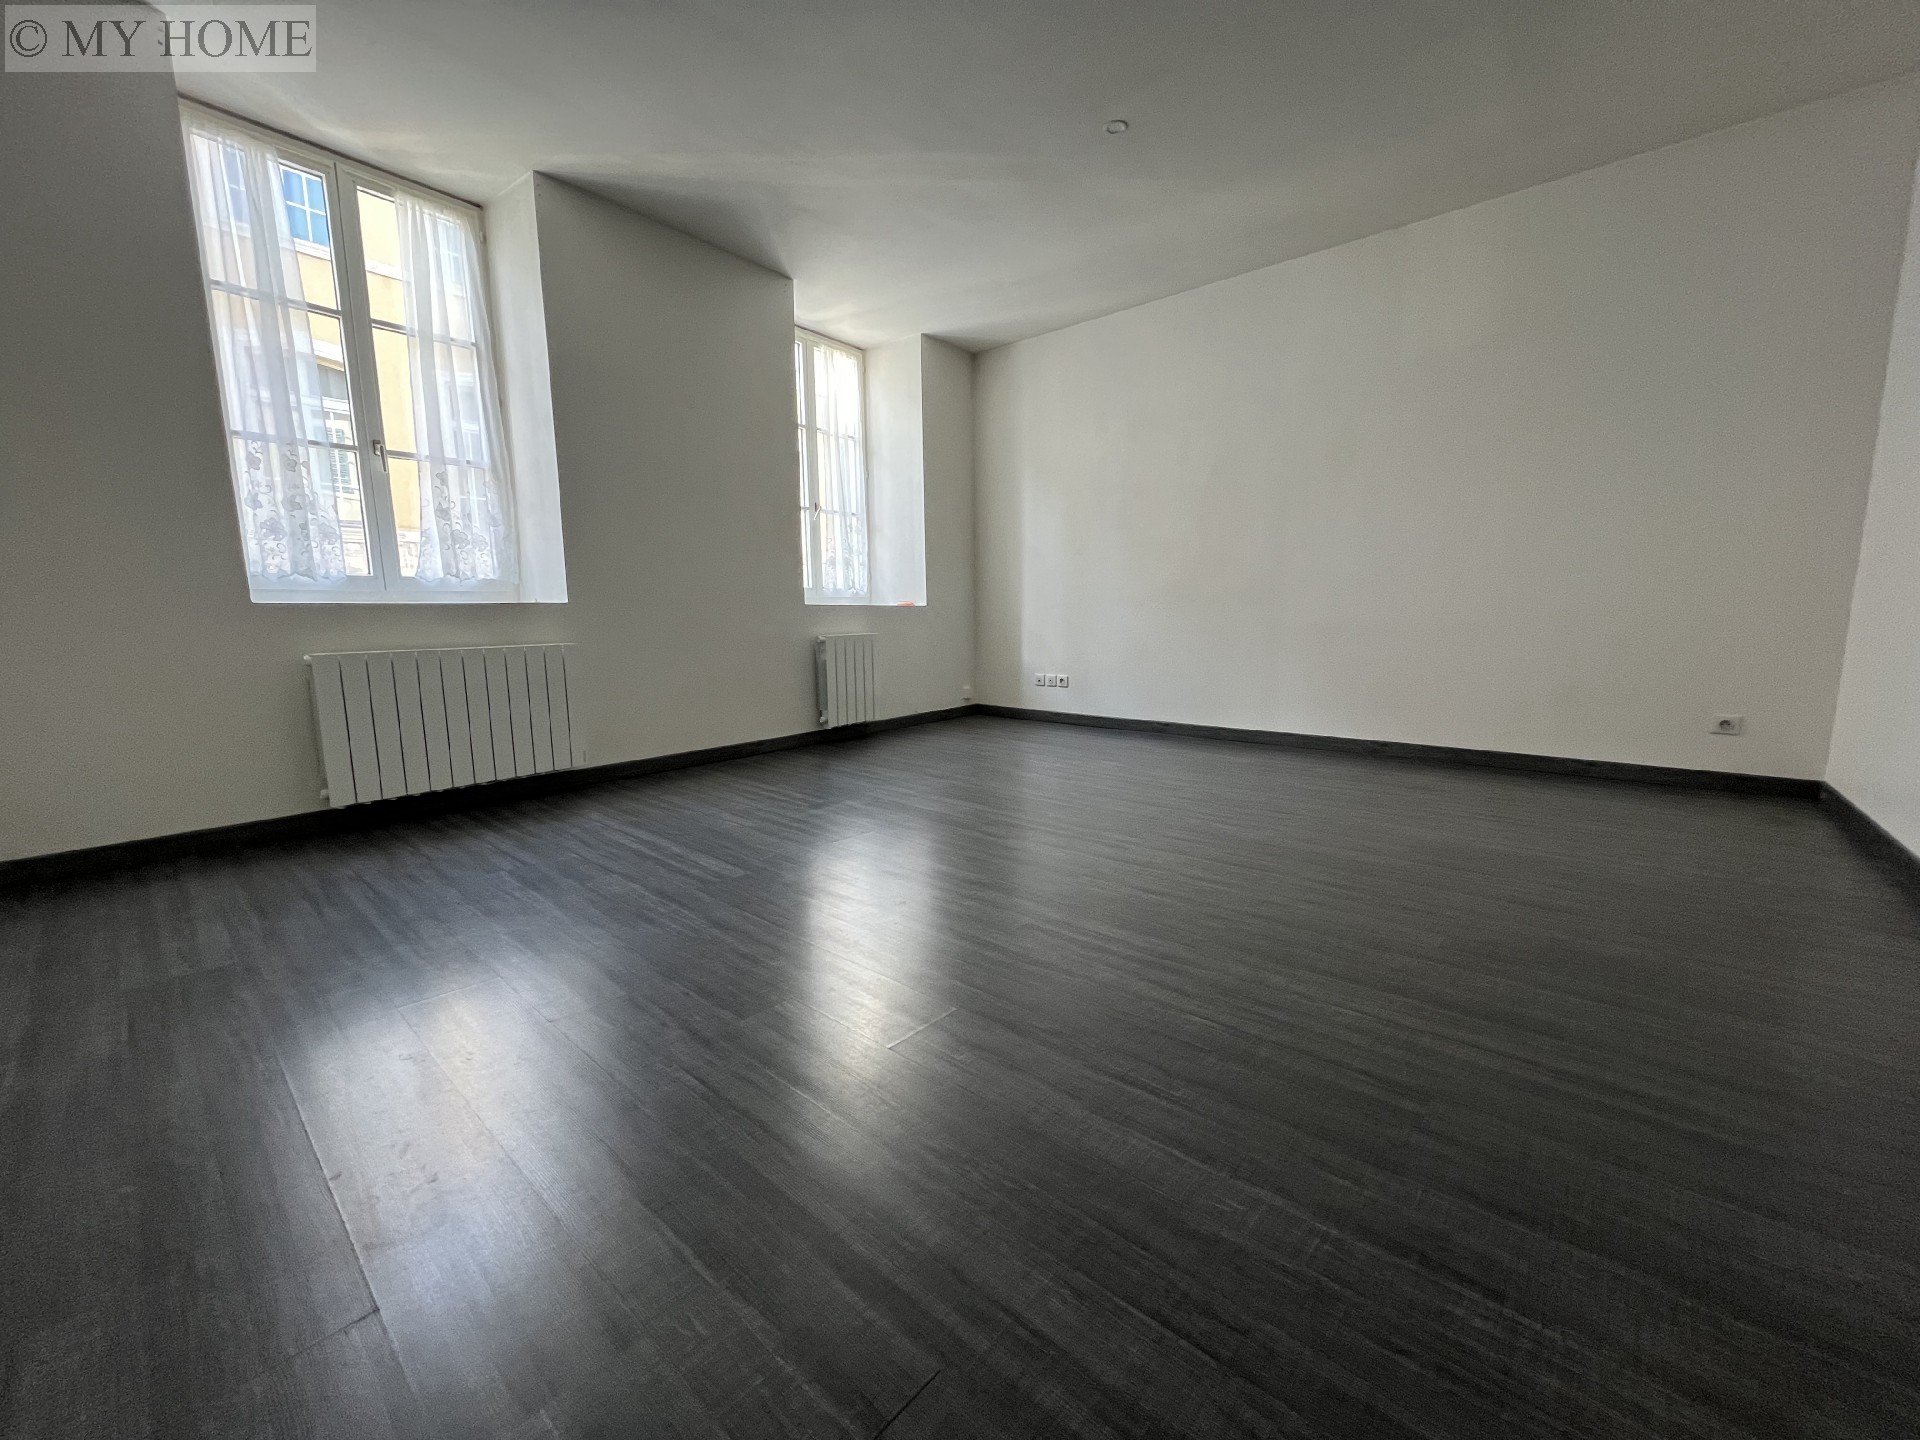 Vente appartement - TOUL 92 m², 4 pièces